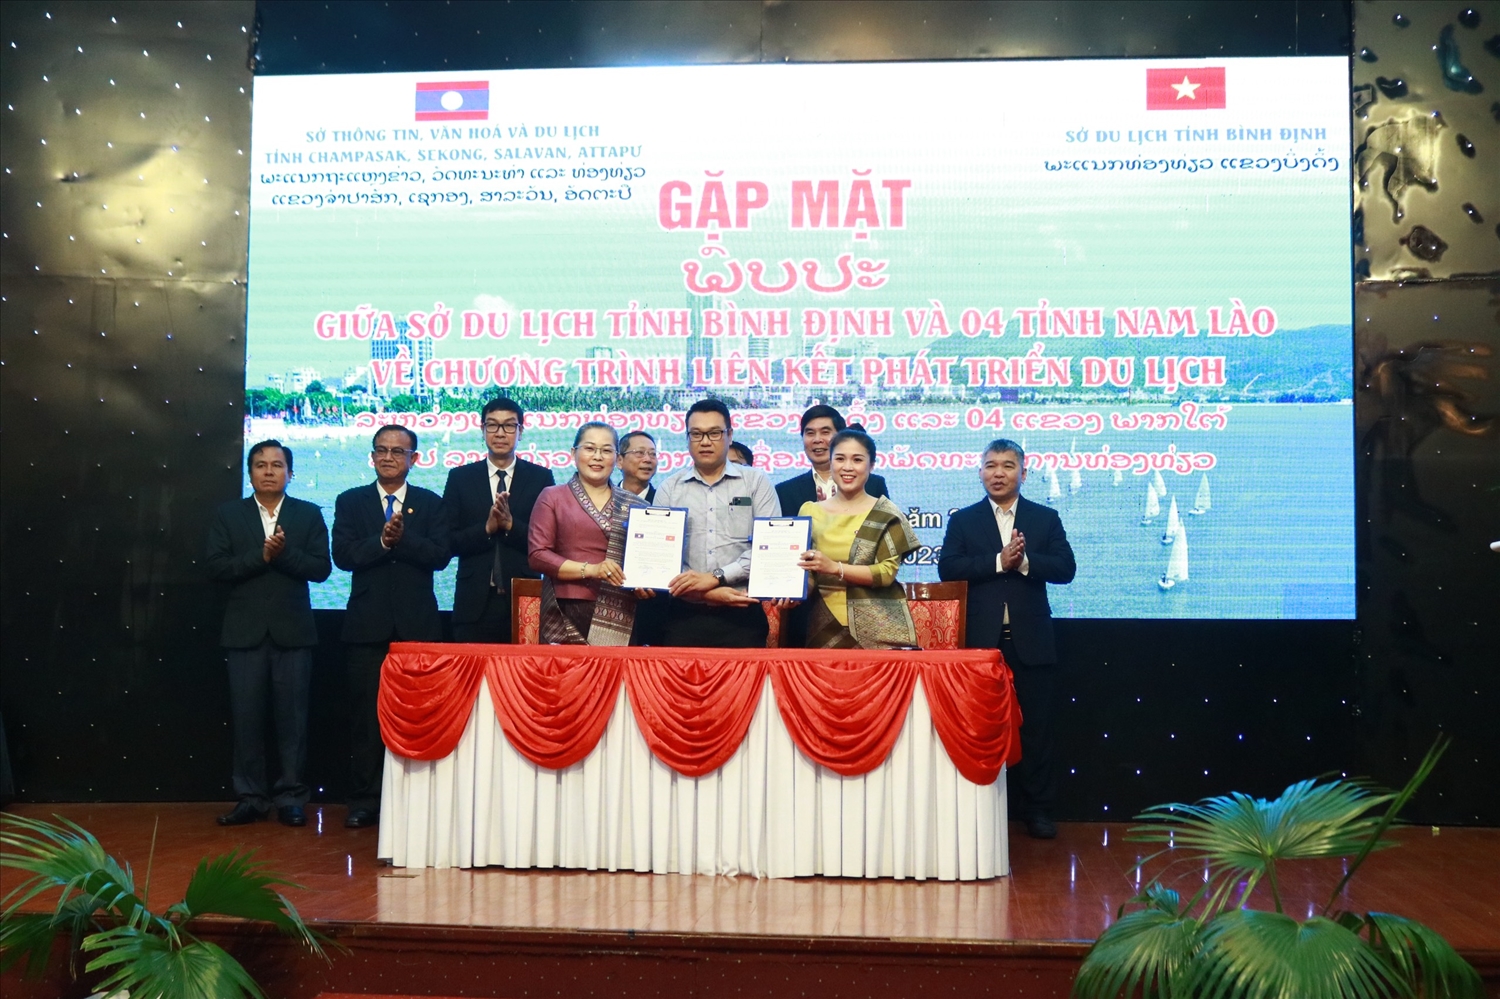 Sở Du lịch Bình Định và các tỉnh Nam Lào ký kết biên bản hợp tác